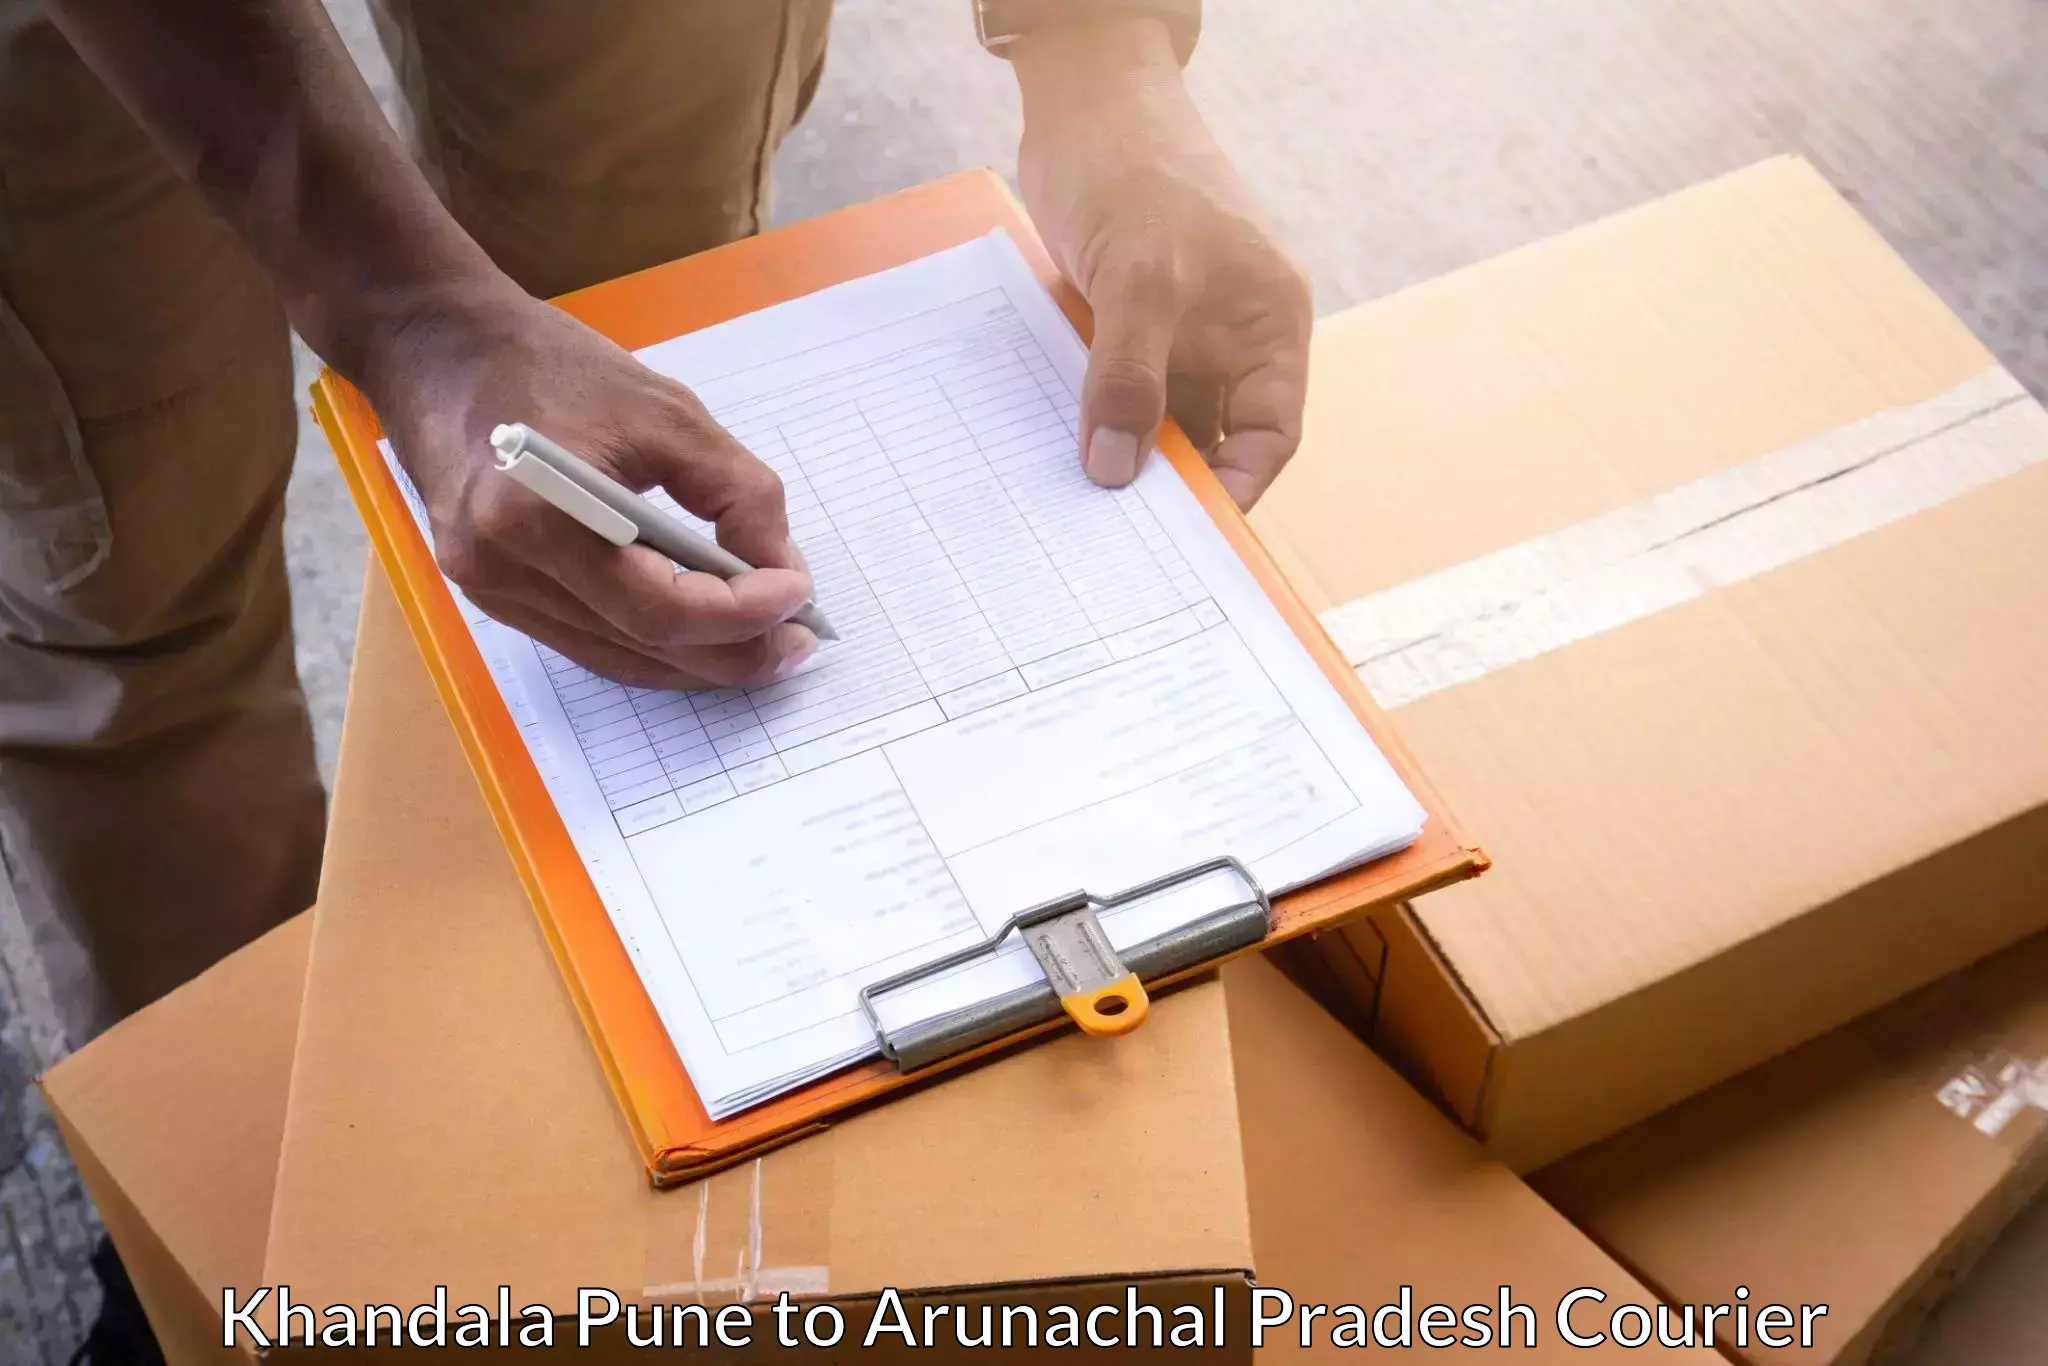 Smart logistics solutions Khandala Pune to Tirap